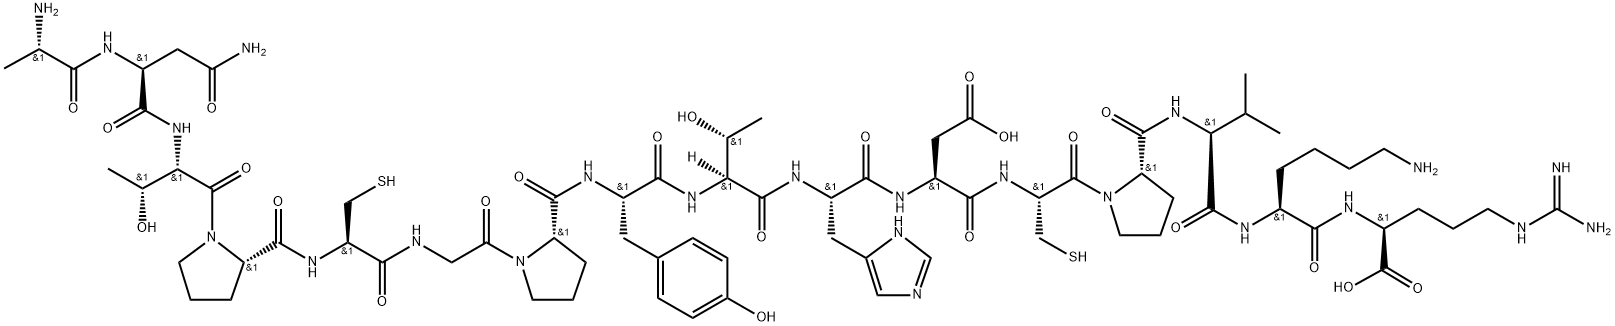 2-{6-アミノ-2-[2-({1-[2-(2-{2-[2-(2-{[1-(2-{2-[(1-{2-[2-(2-アミノプロパンアミド)-3-カルバモイルプロパンアミド]-3-ヒドロキシブタノイル}ピロリジン-2-イル)ホルムアミド]-3-スルファニルプロパンアミド}アセチル)ピロリジン-2-イル]ホルムアミド}-3-(4-ヒドロキシフェニル)プロパンアミド)-3-ヒドロキシブタンアミド]-3-(3H-イミダゾール-4-イル)プロパンアミド}-3-カルボキシプロパンアミド)-3-スルファニルプロパノイル]ピロリジン-2-イル}ホルムアミド)-3-メチルブタンアミド]ヘキサンアミド}-5-[(ジアミノメチリデン)アミノ]ペンタン酸 化学構造式